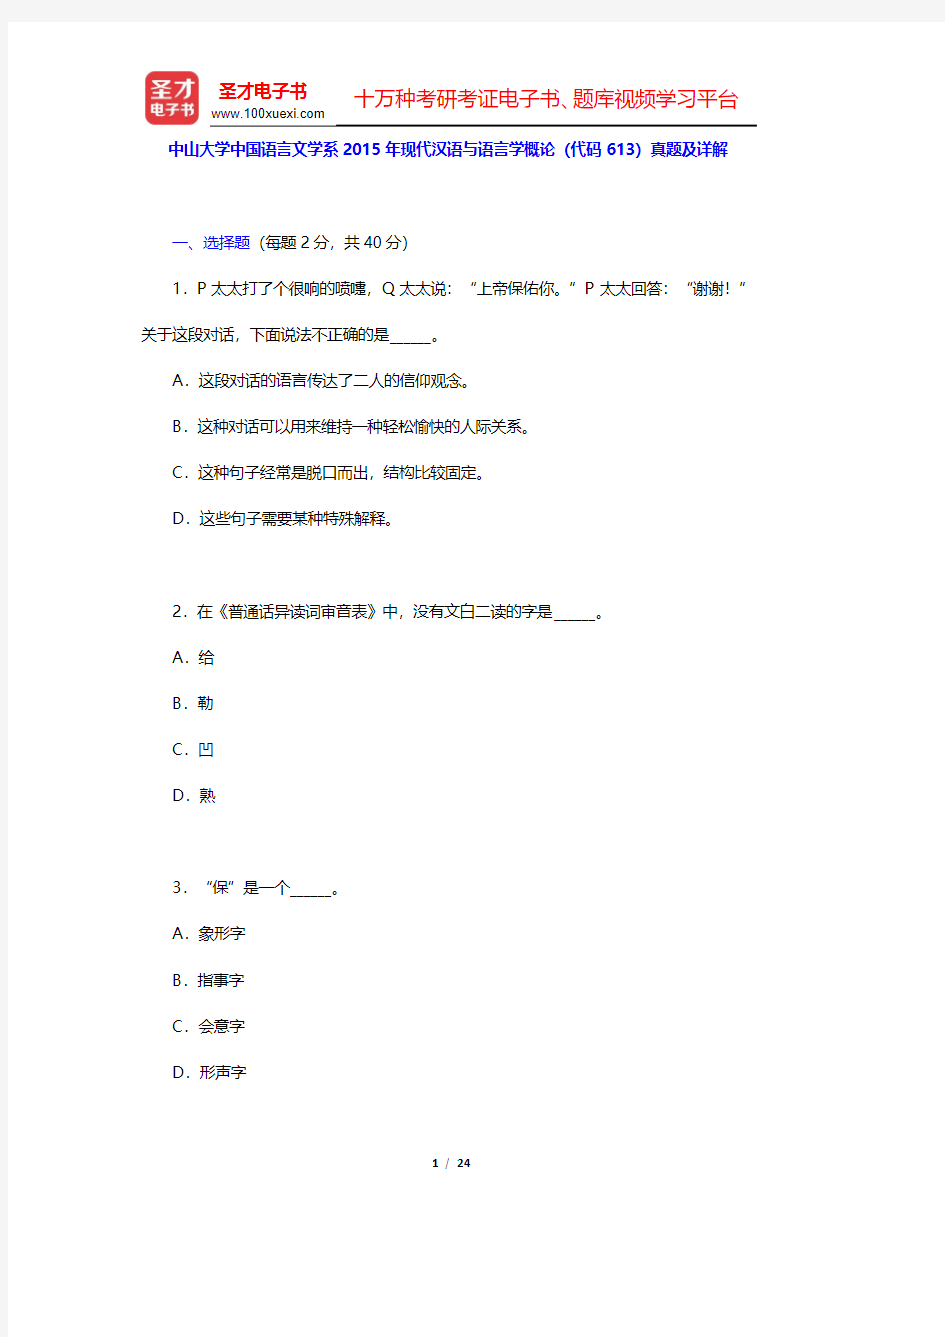 中山大学中国语言文学系2015年现代汉语与语言学概论(代码613)真题及详解(圣才出品)